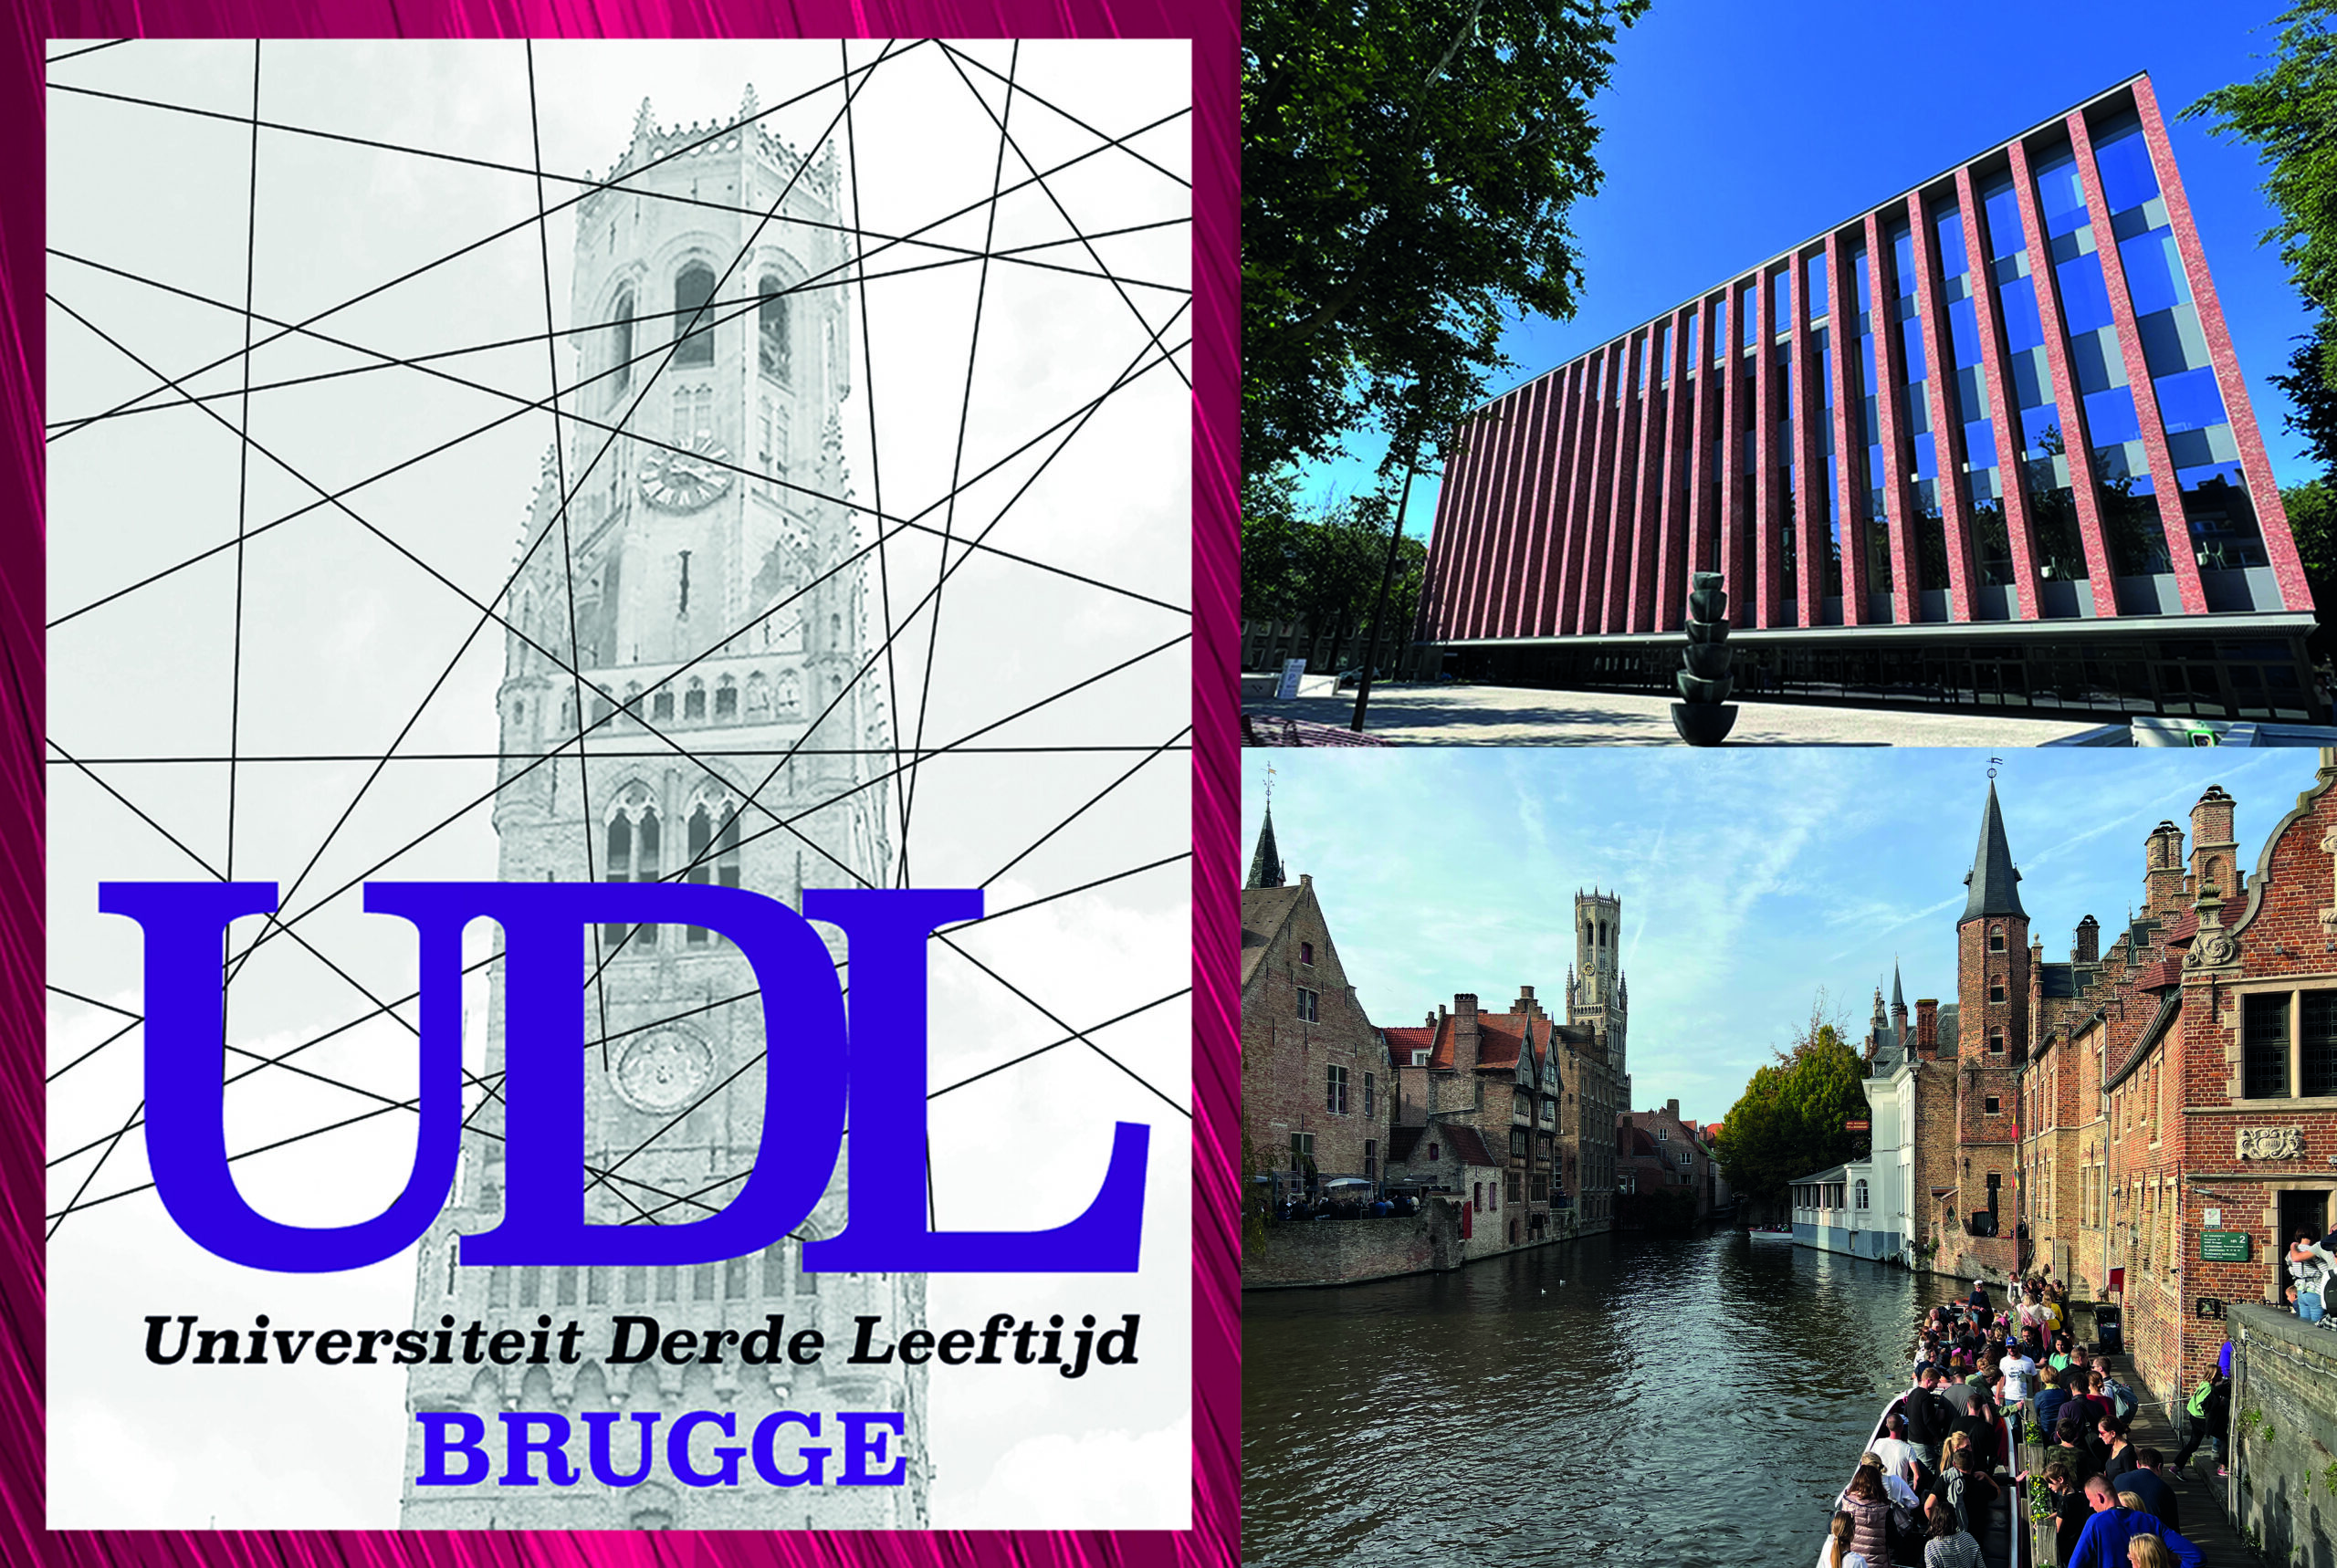 UDL Brugge